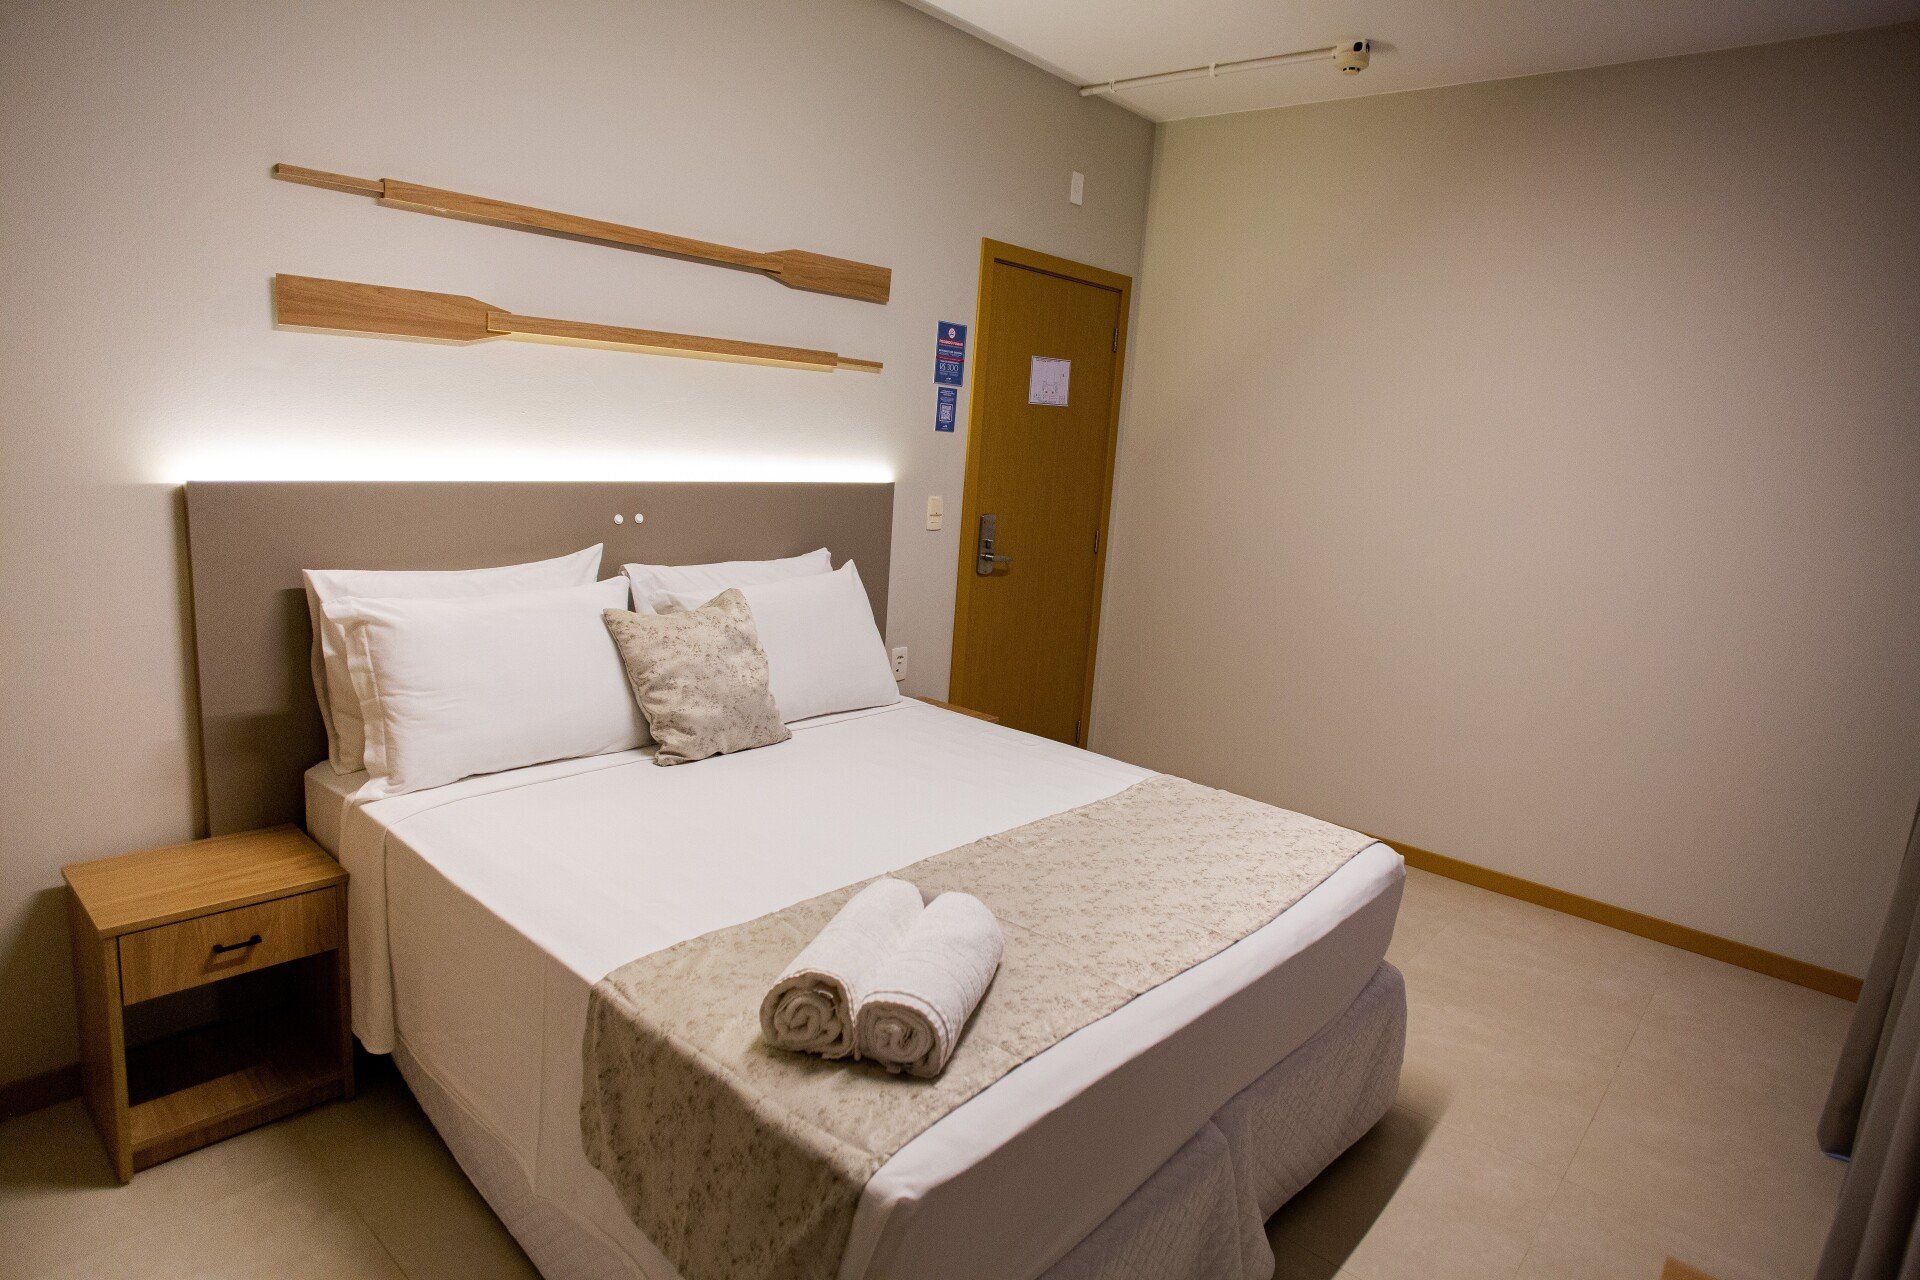 Um quarto de hotel com cama, mesa de cabeceira e porta.